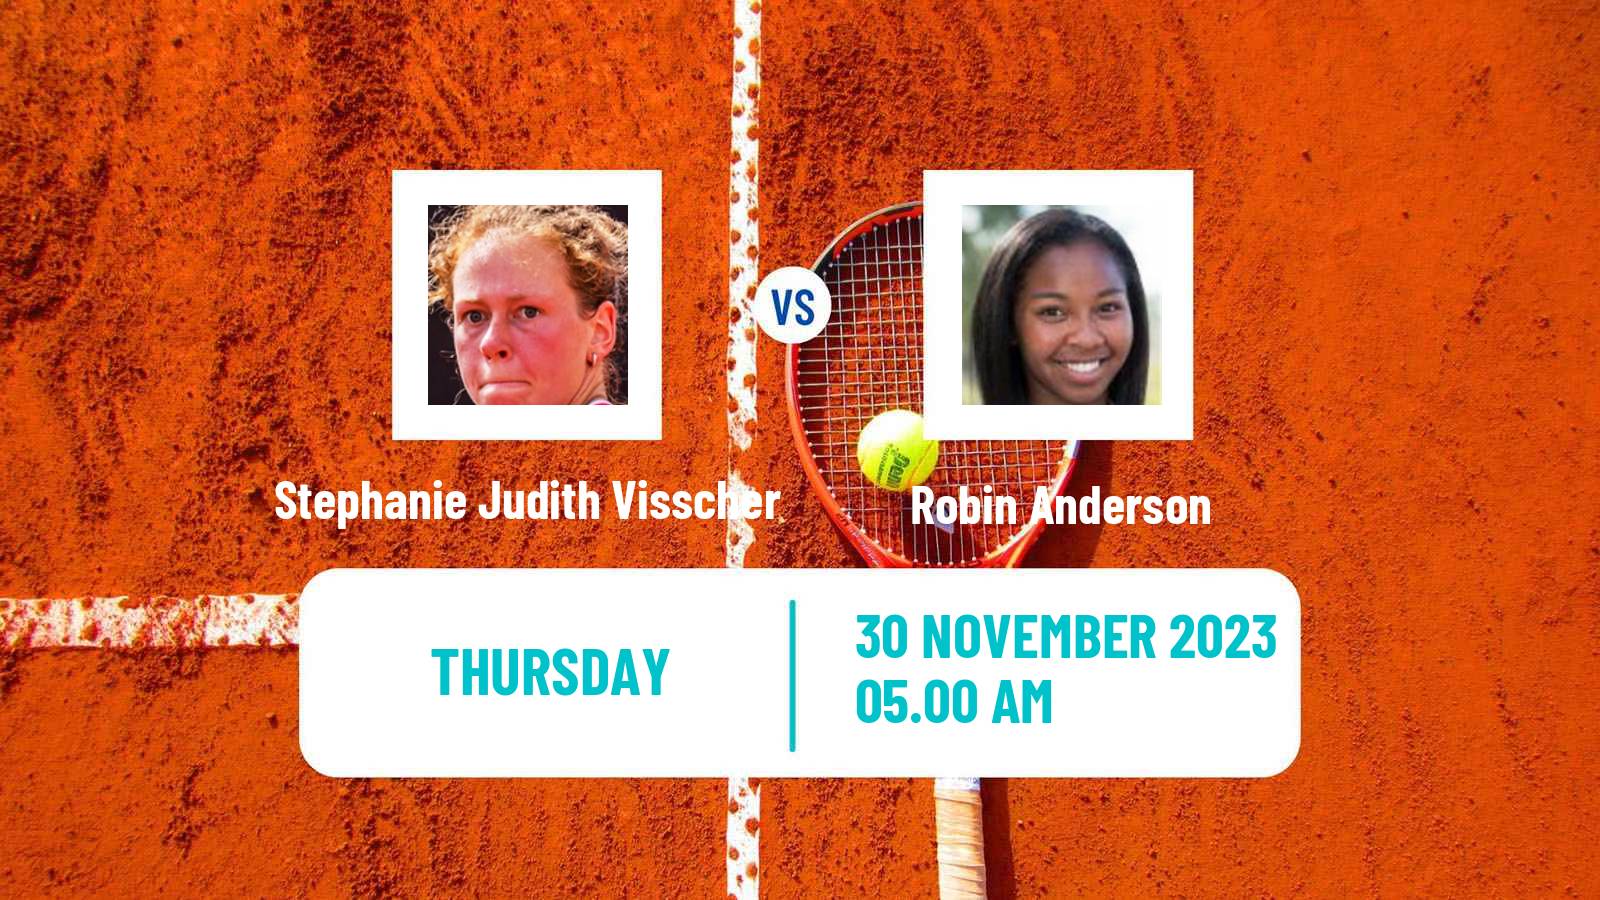 Tennis ITF W25 Lousada 2 Women Stephanie Judith Visscher - Robin Anderson